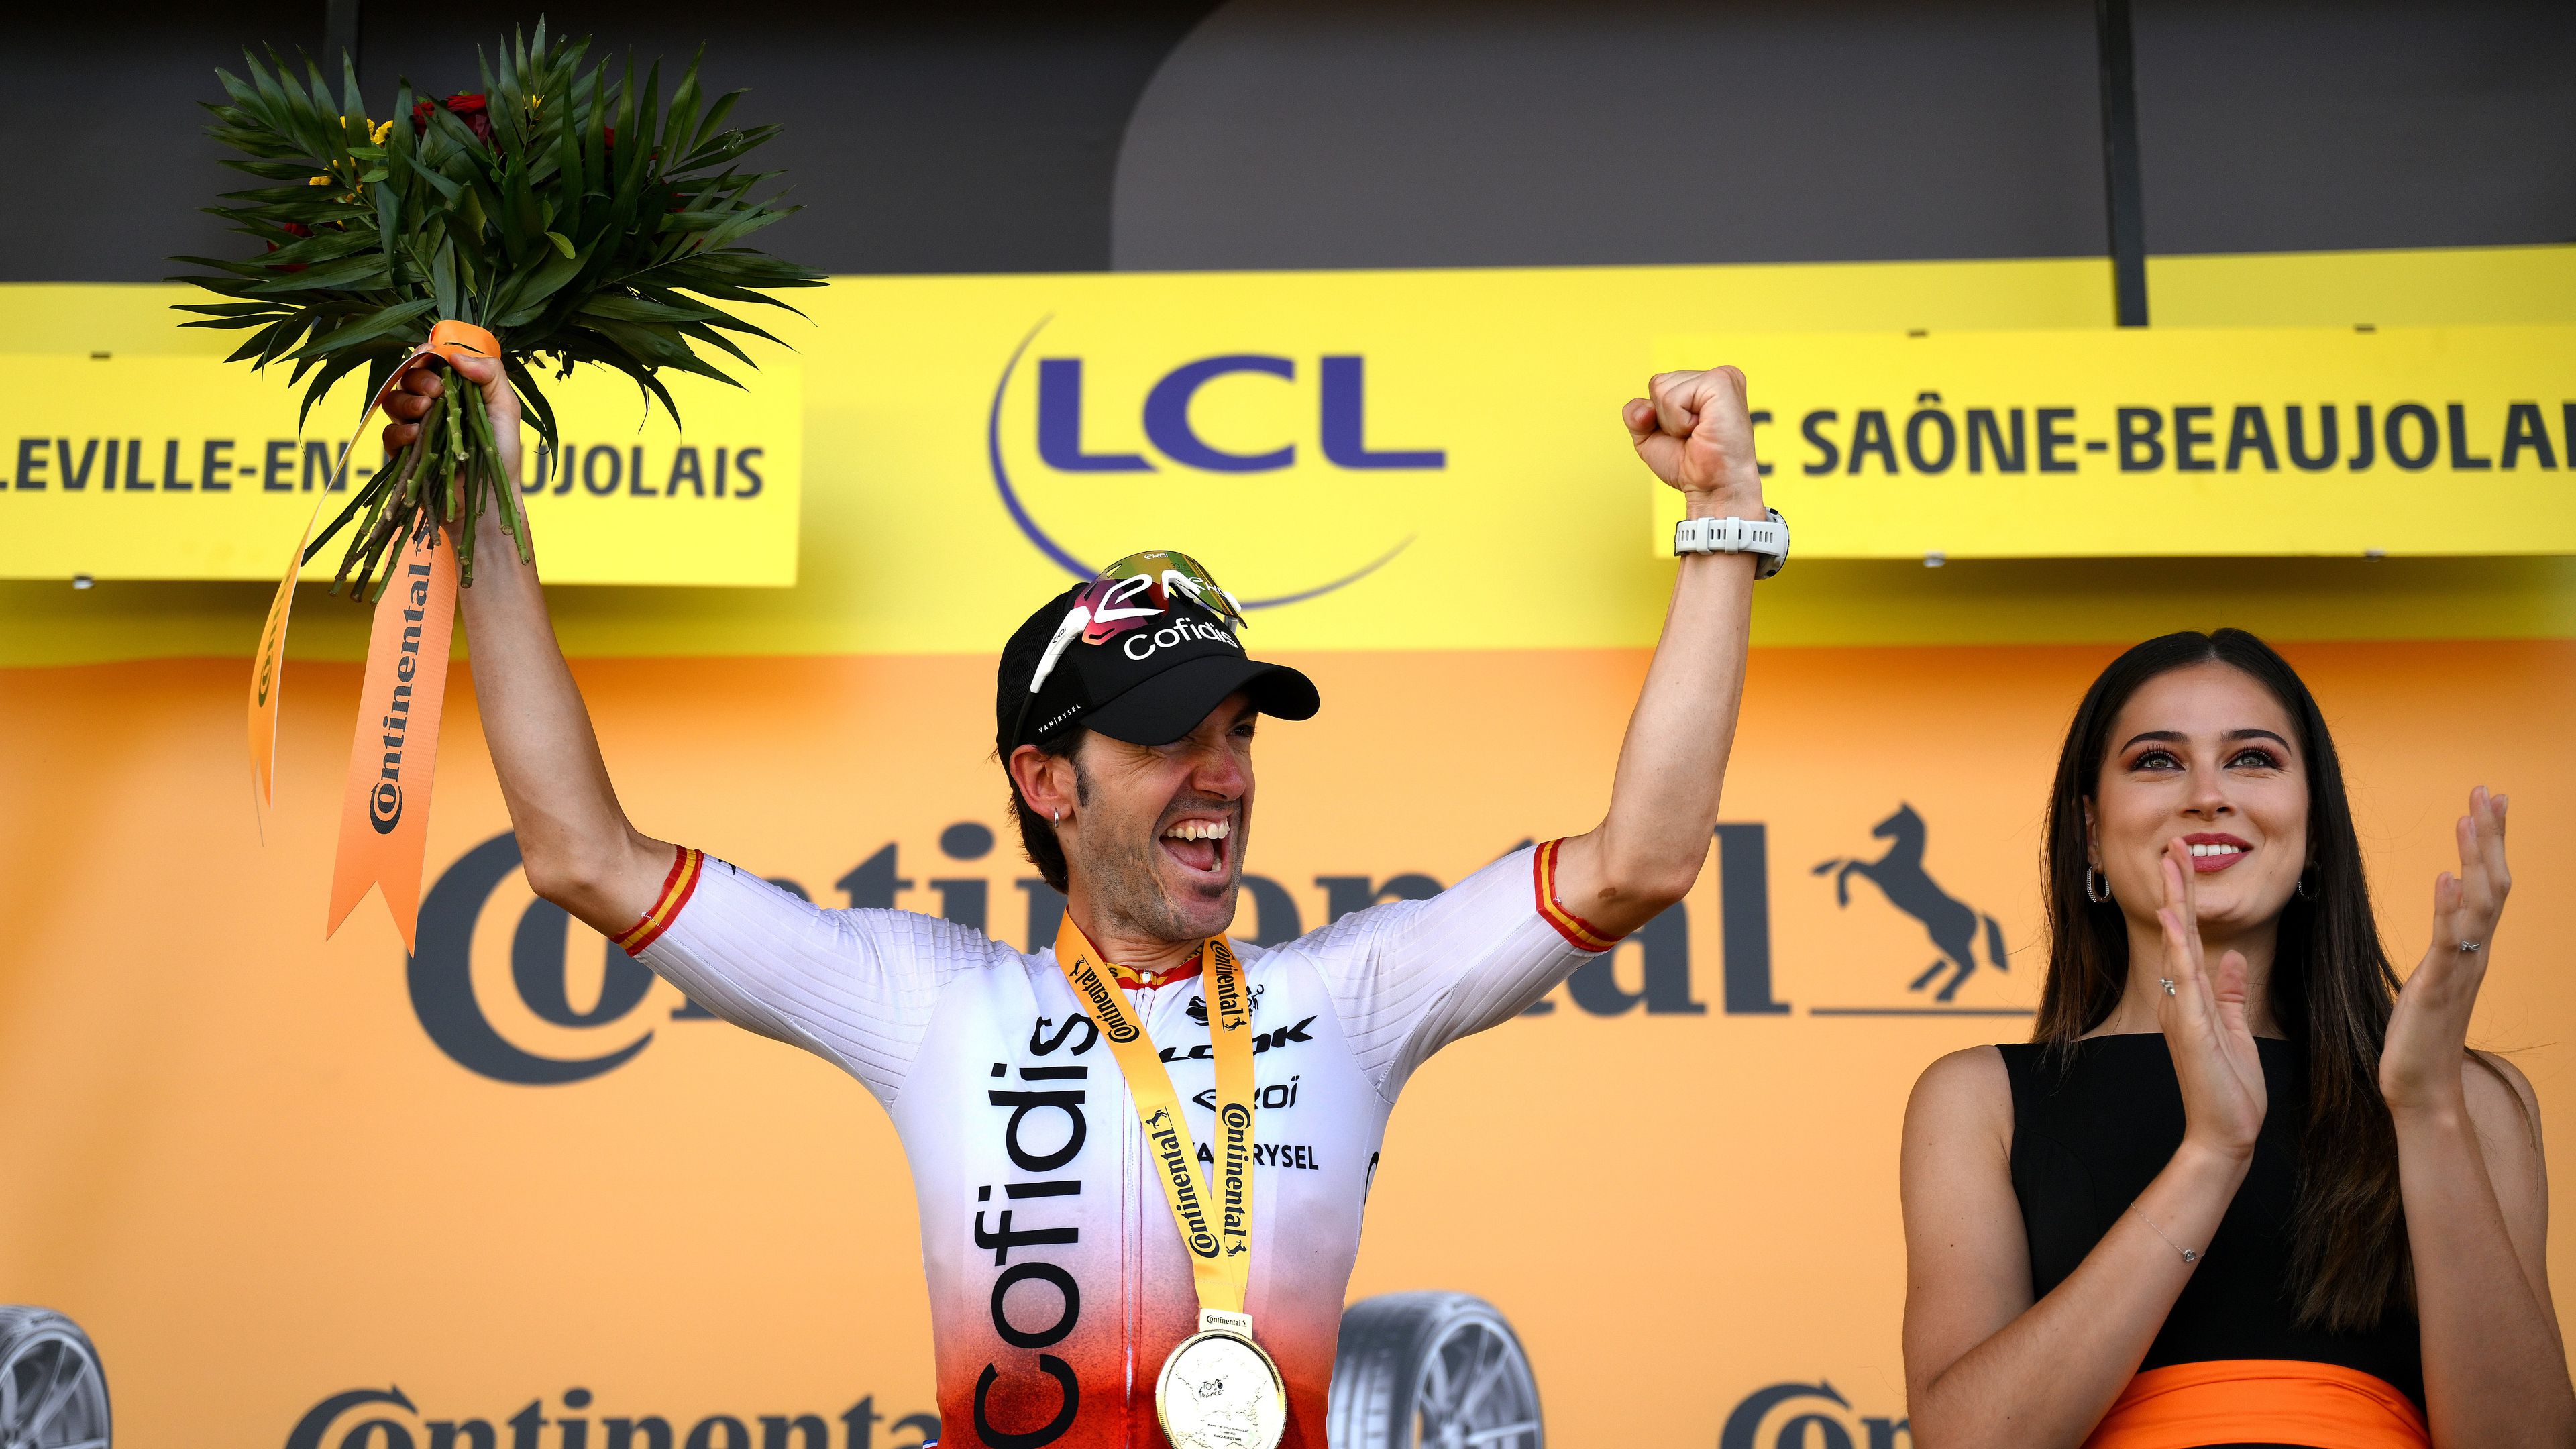 Izagirre szakaszgyőzelme, Vingegaard élen maradt a Tour de France-on